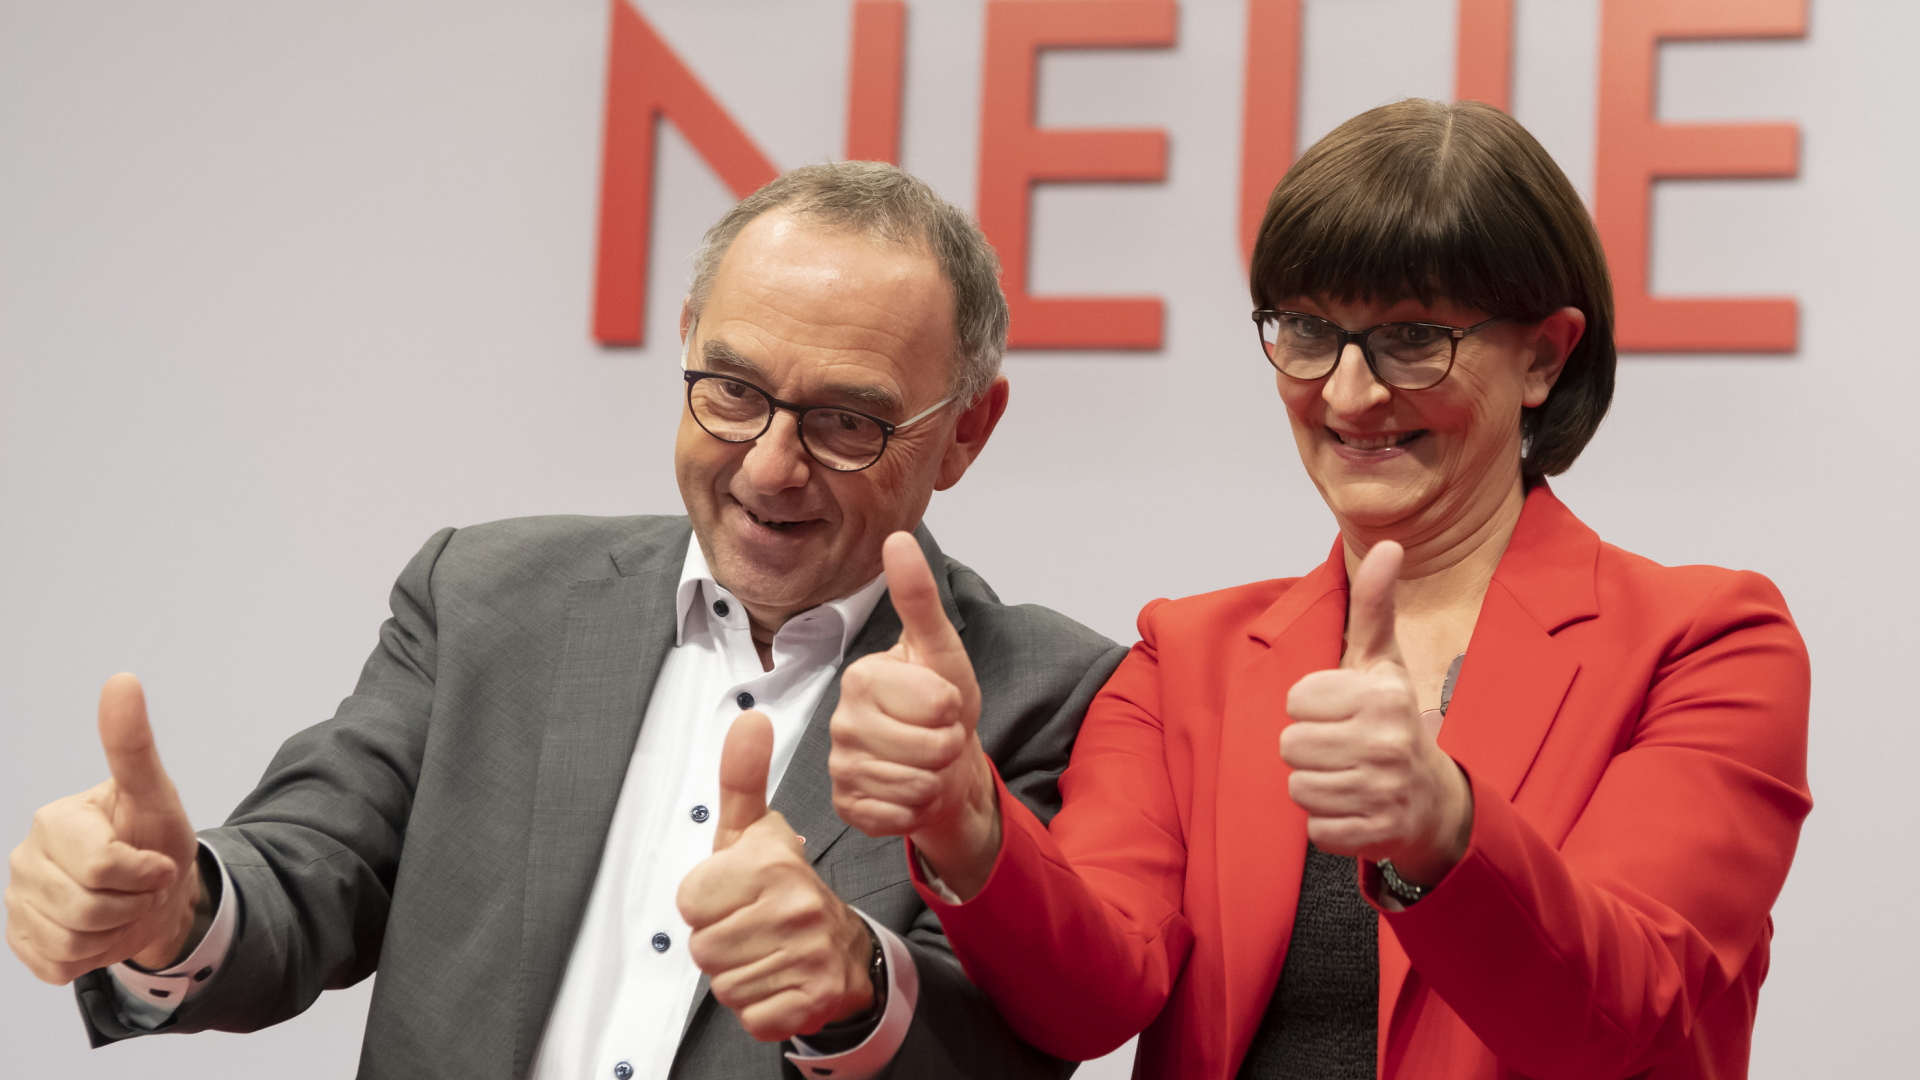 Saskia Esken und Norbert Walter-Borjans auf dem SPD-Parteitag